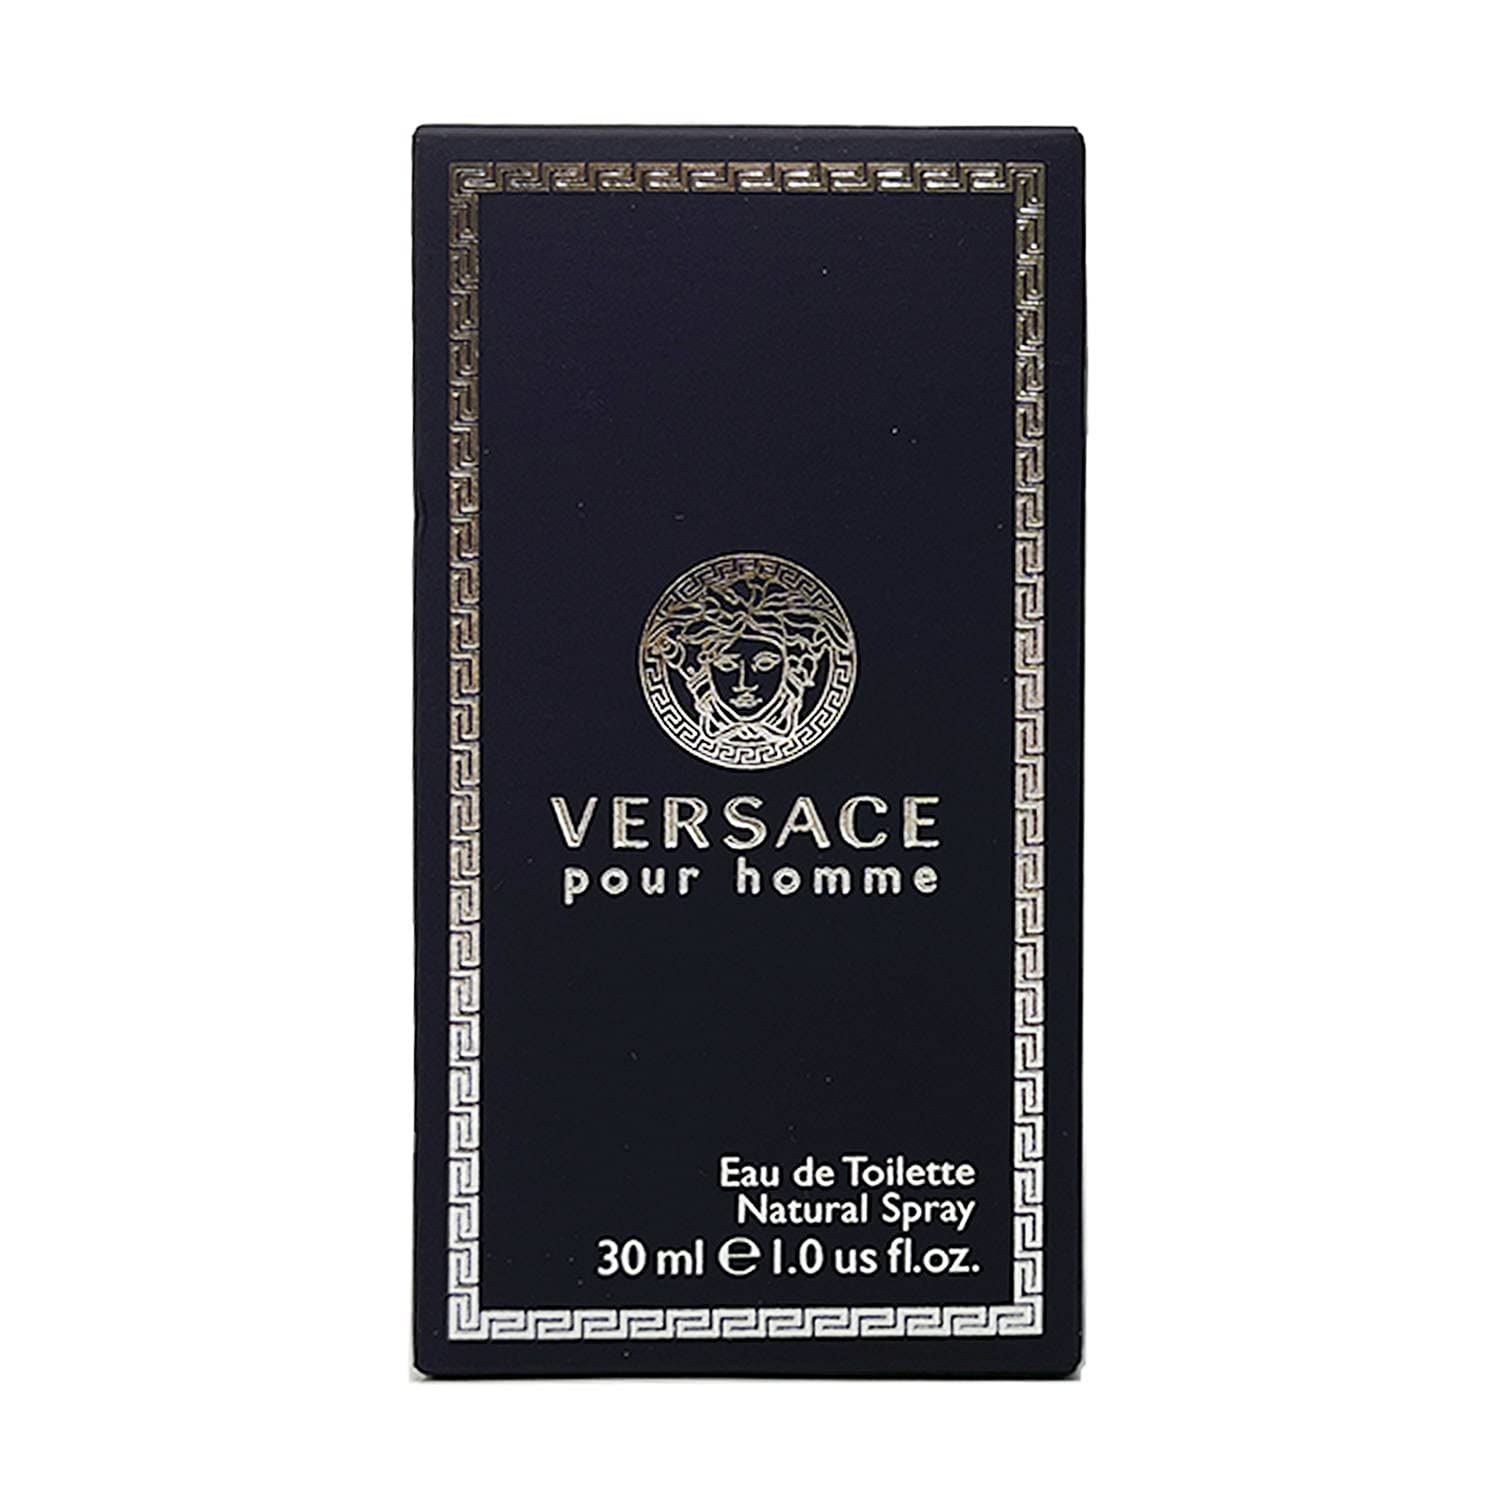 Versace होमे यू डे टॉयलेट नेचुरल स्प्रे 1.0 औंस डालें...